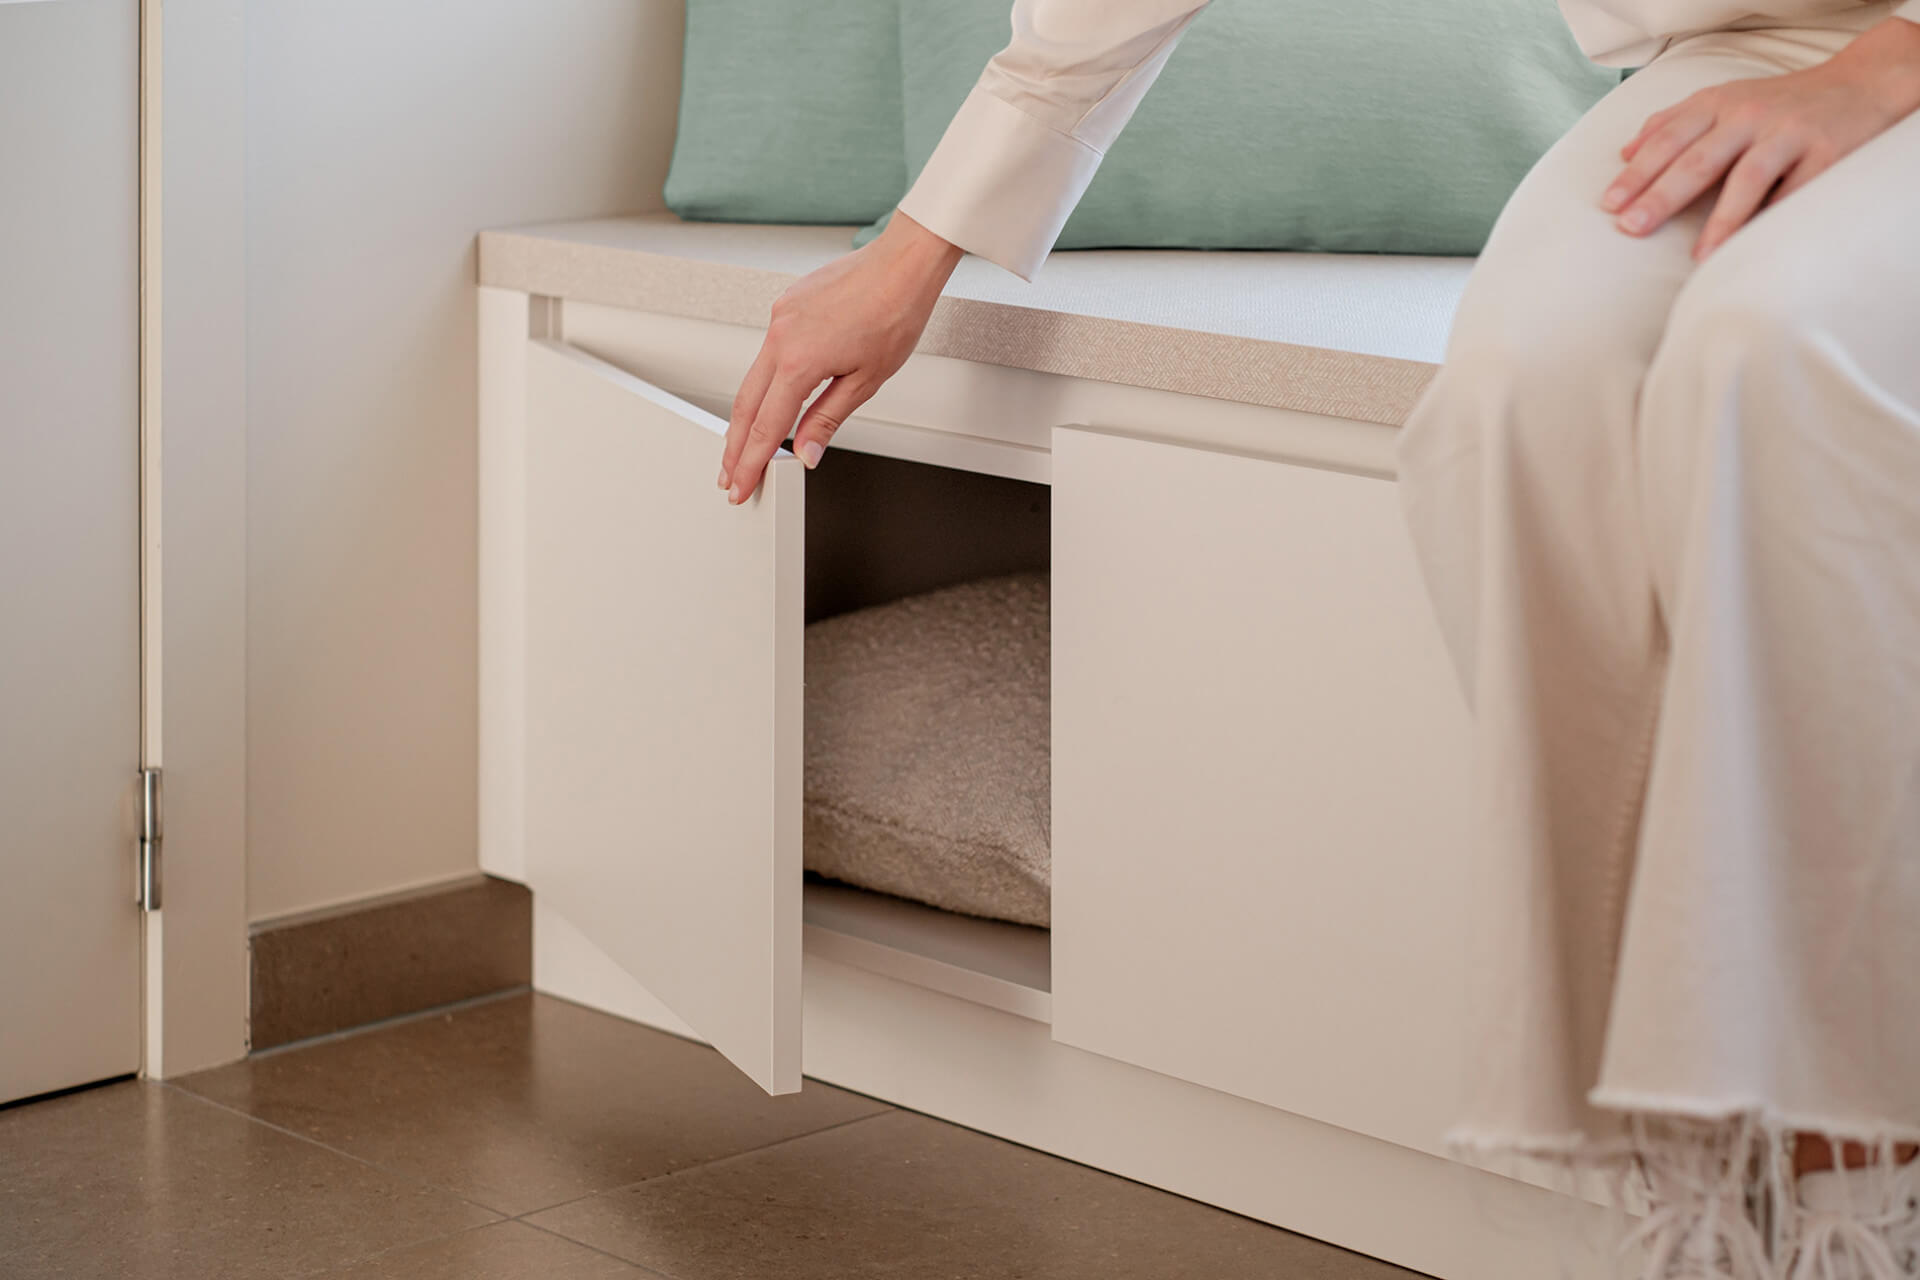 Beige custom made storage bench by maatkasten online